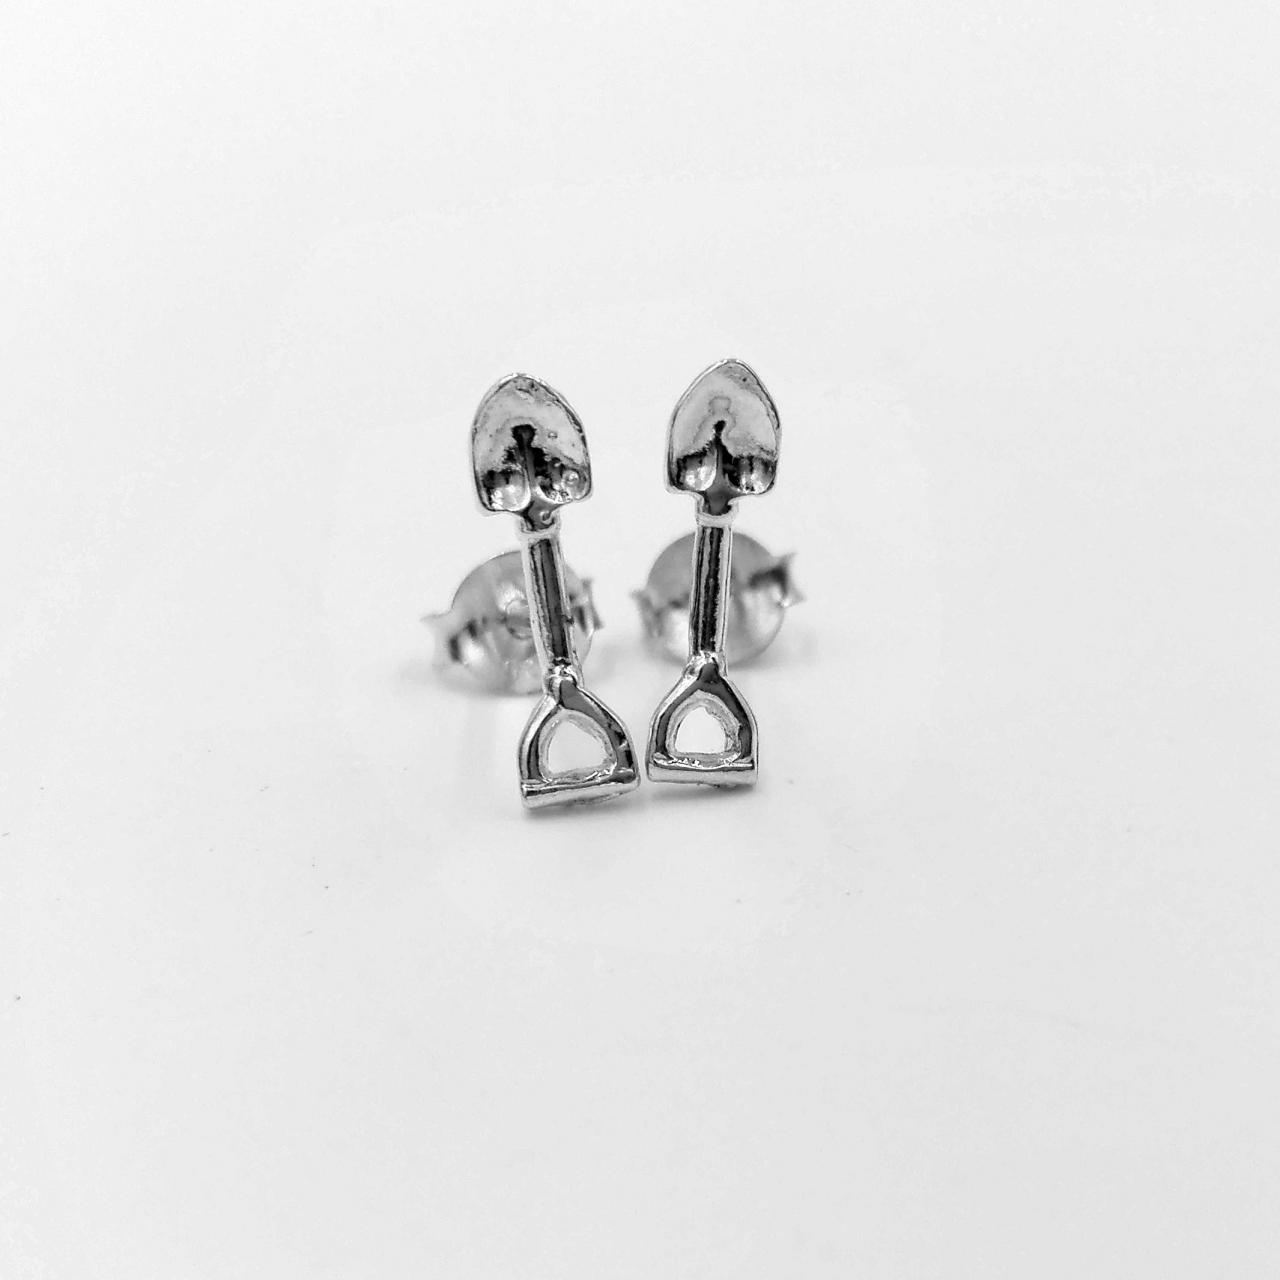 Sterling Silver Shovel Stud Earrings Hardware Silver Earrings Tools Silver Jewelry Women Earrings For Birthday Gift Gift For Girlfriend